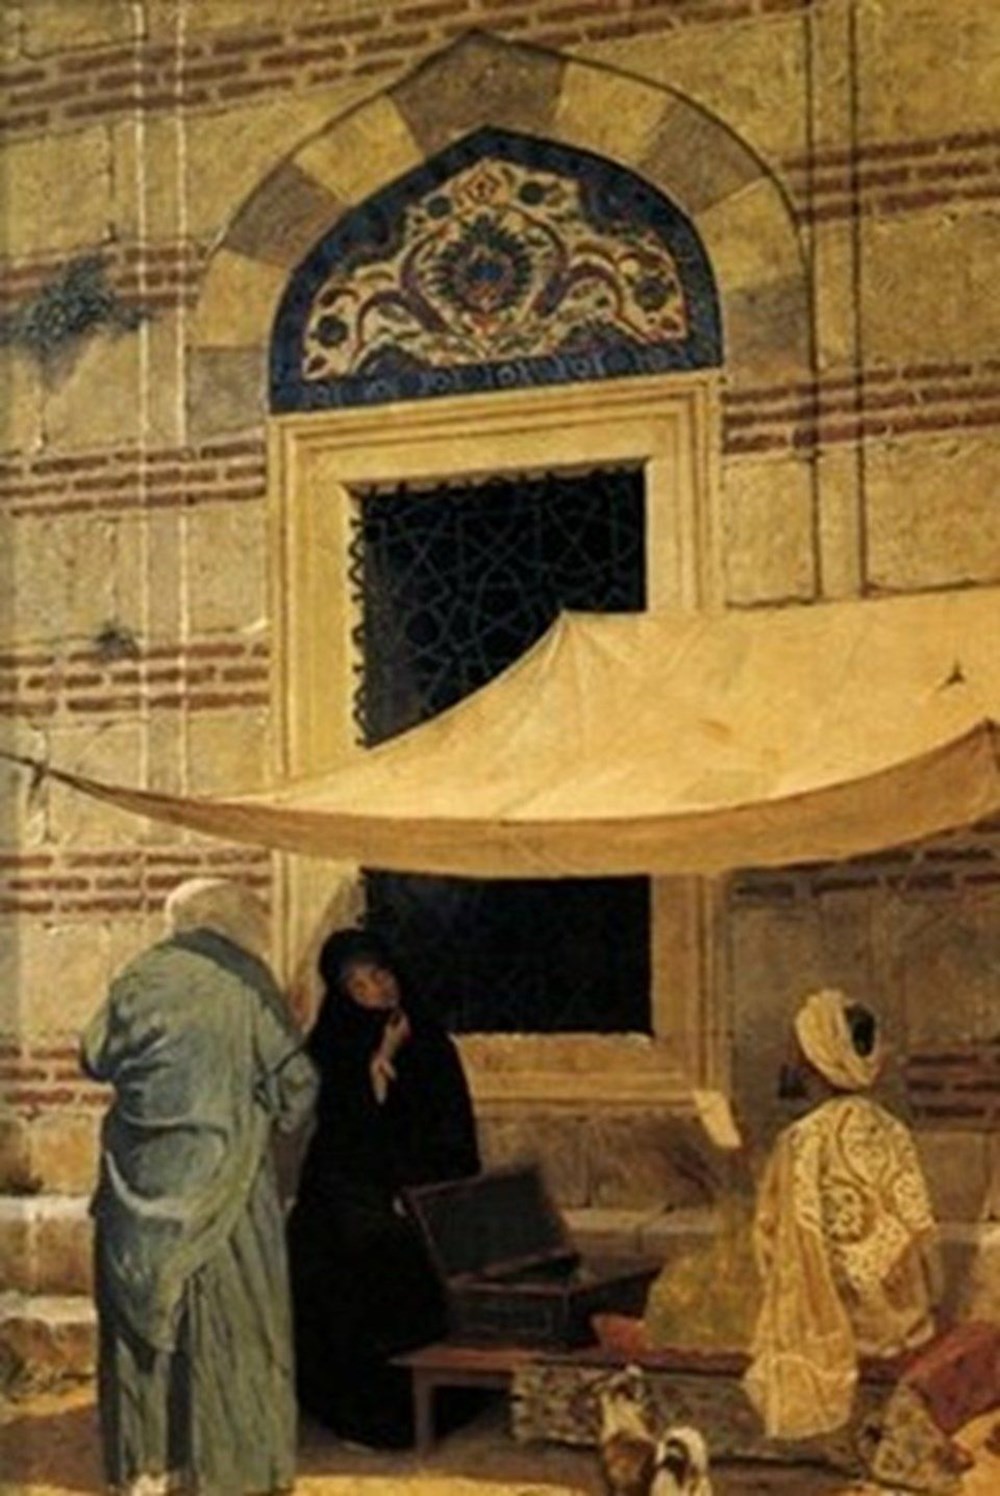 3 haftada 3 tablosu rekor fiyata satılan Osman Hamdi Bey hakkında bilmeniz gerekenler - 14